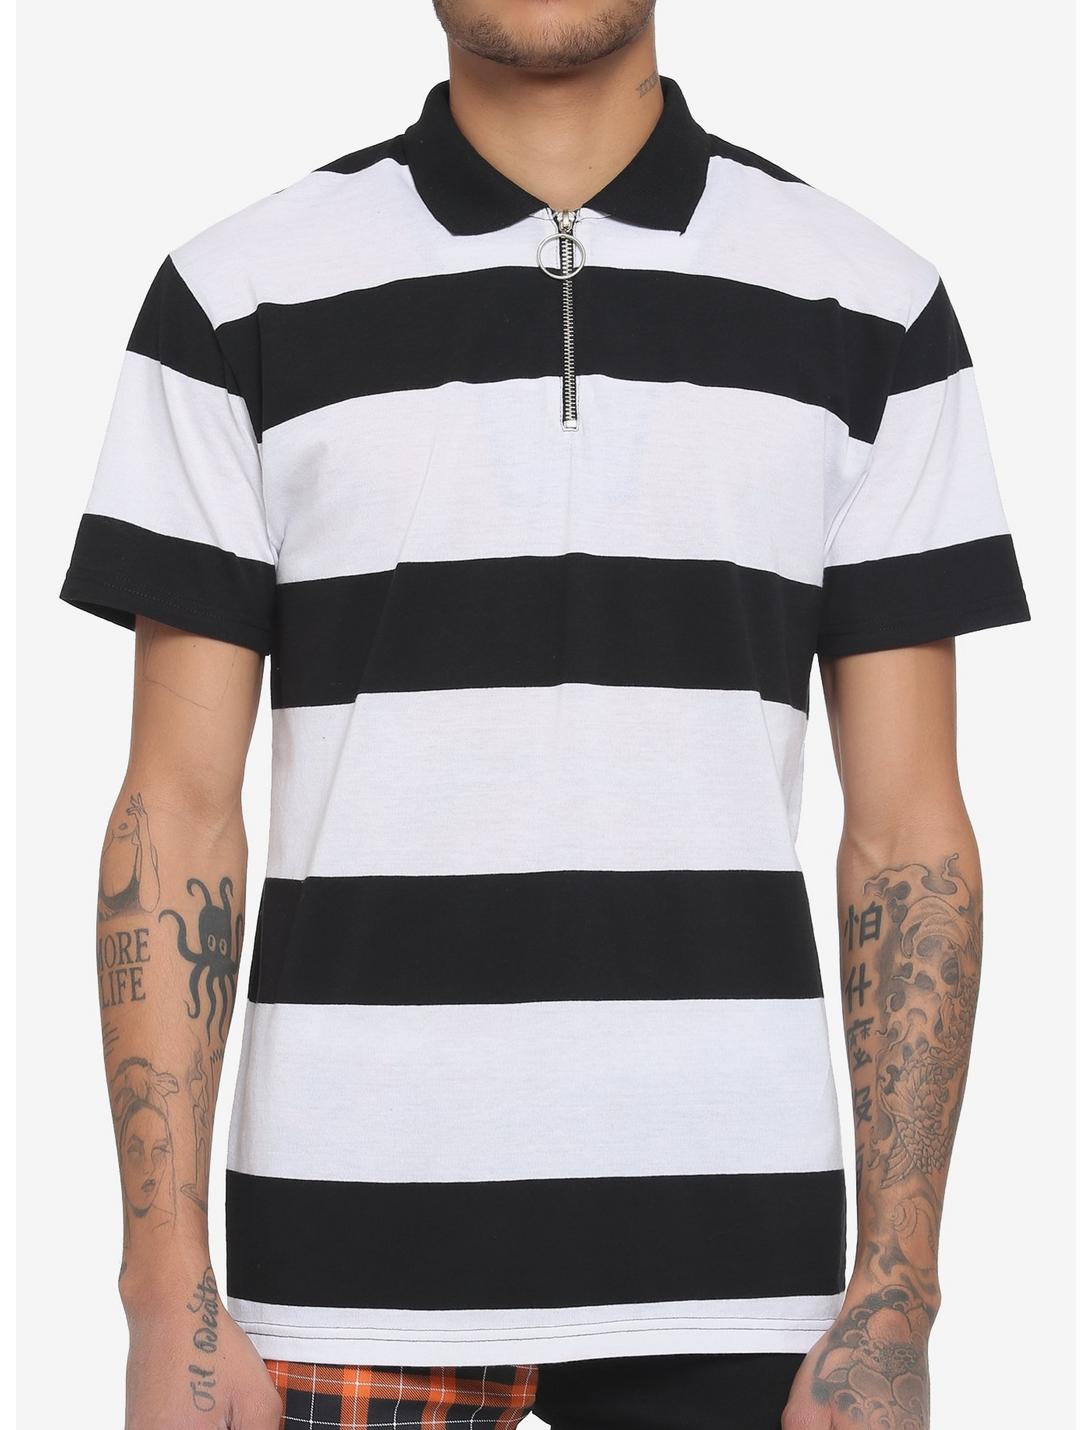 Black & White Stripe Zipper Polo Shirt, STRIPE - WHITE, hi-res